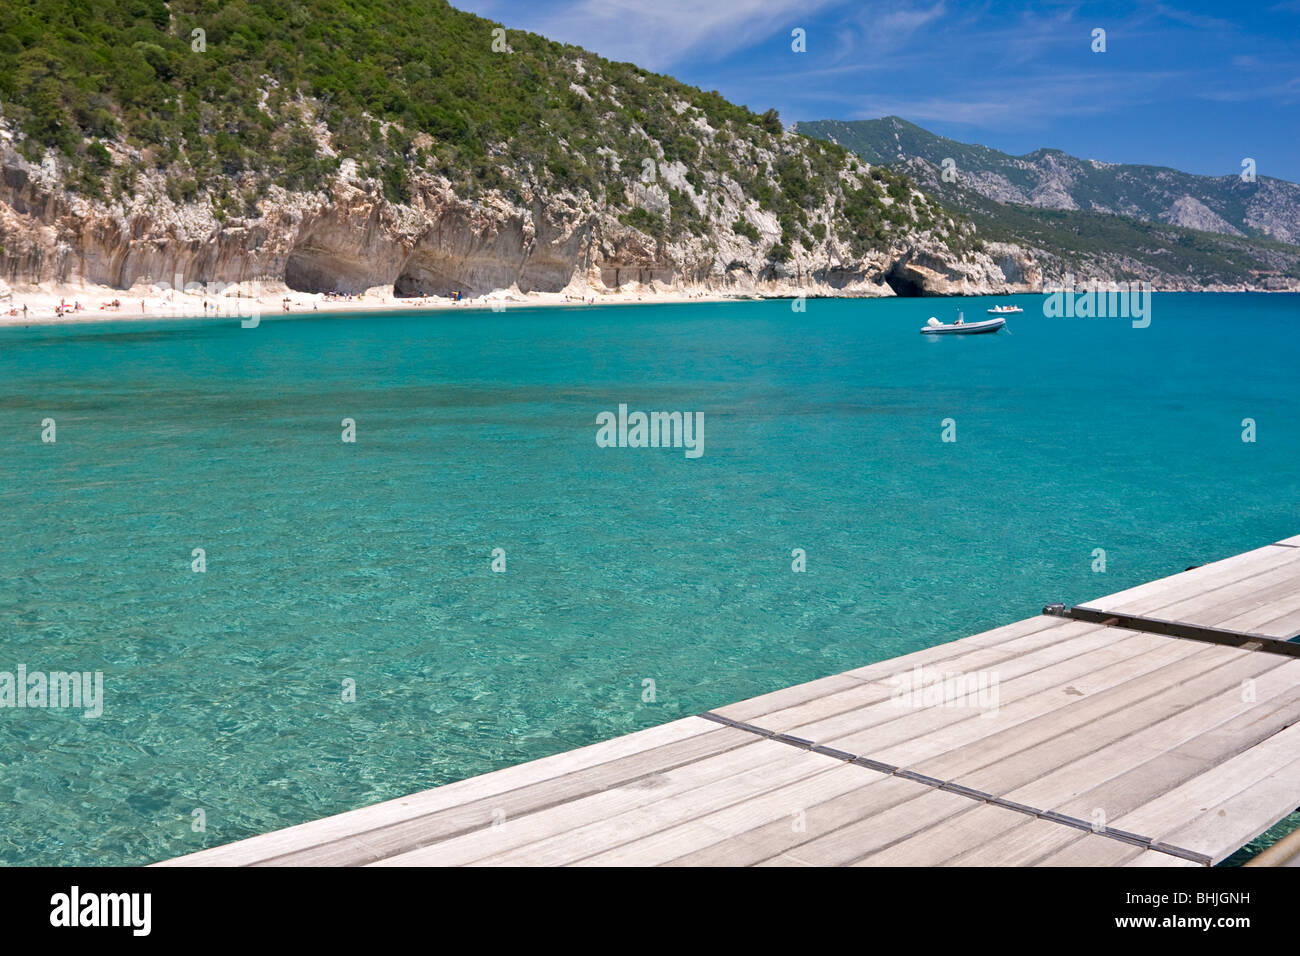 Getty en bois vide dans la plage de Cala Luna, Sardaigne, île de l'Italie. Eau bleu clair dans la baie de Cala Luna, Mer Méditerranée. Banque D'Images